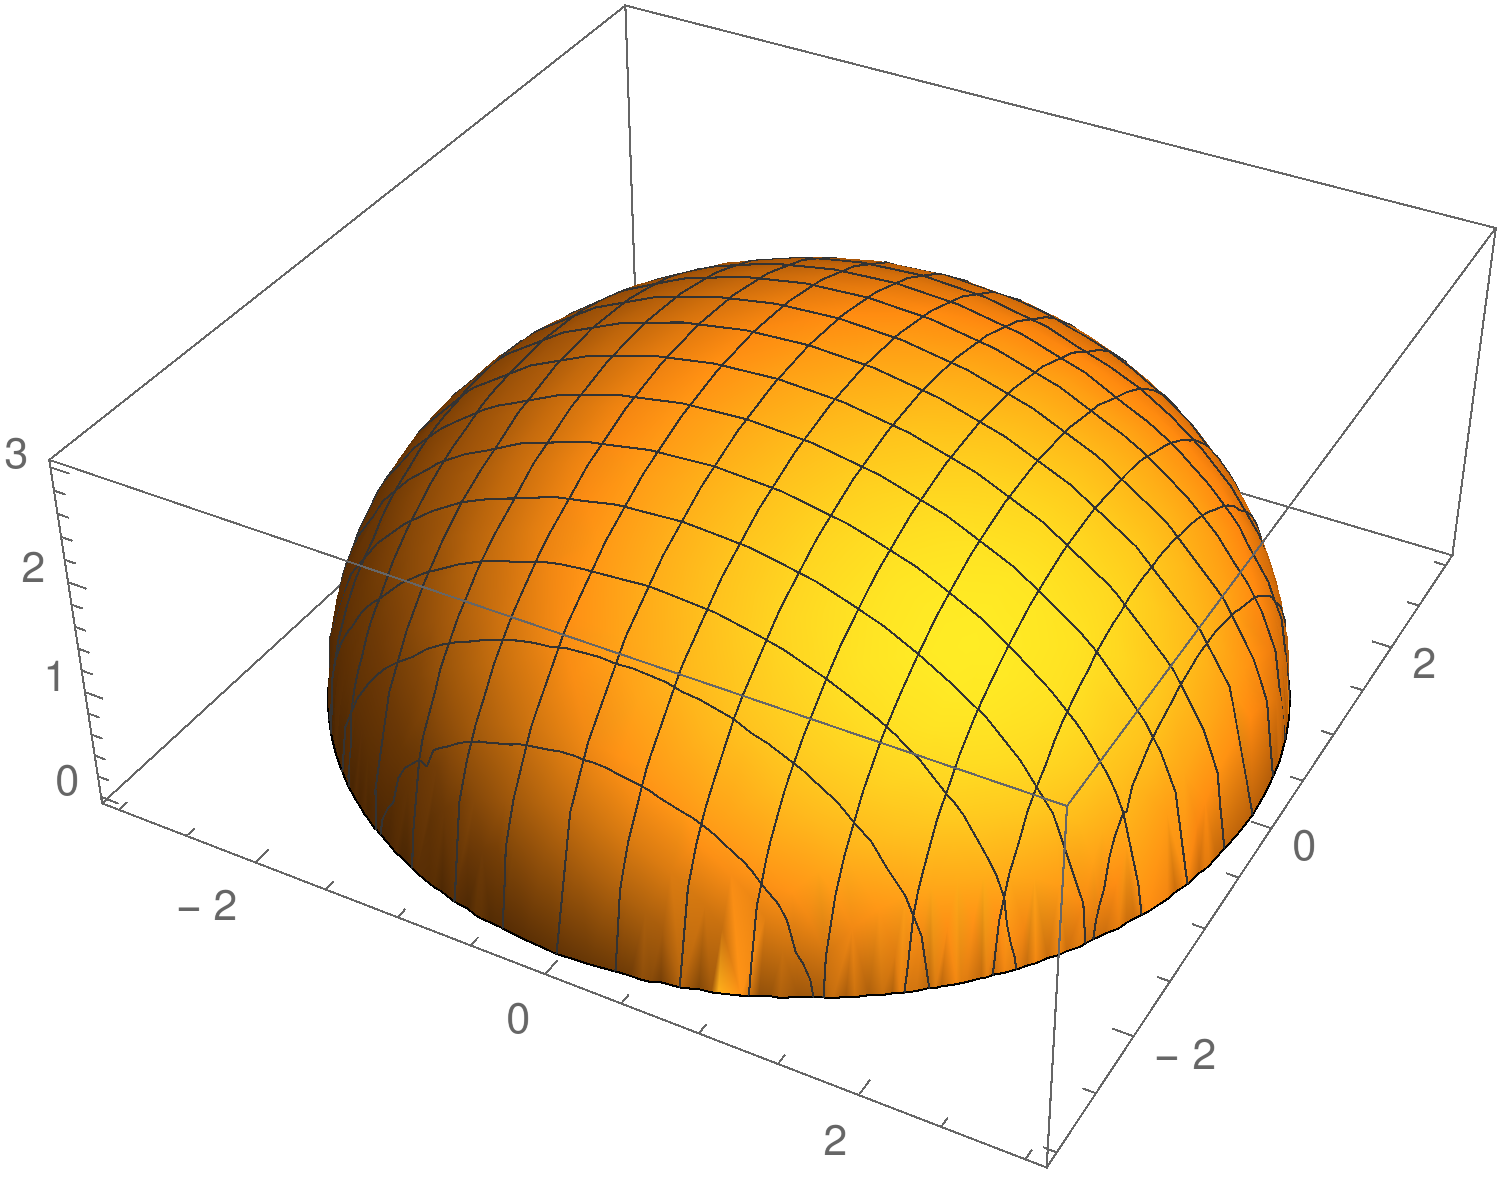 Esimerkki 2 (paikallinen maksimi) Funktion kuvaaja z = f (x, y), kun f